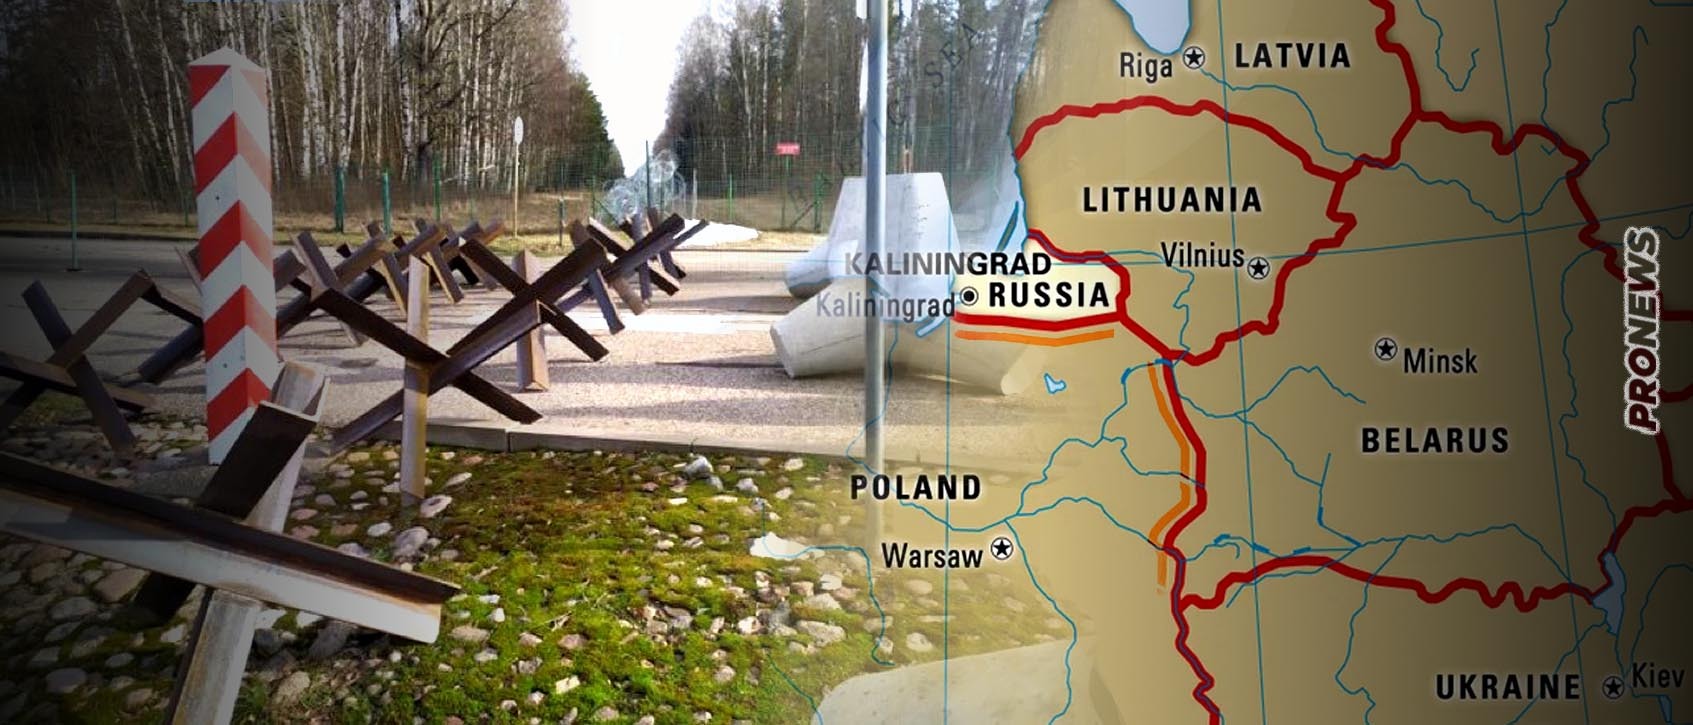 Αντιαρματικά εμπόδια τοποθετεί η Πολωνία στα σύνορα με την Λευκορωσία και το Καλίνινγκραντ